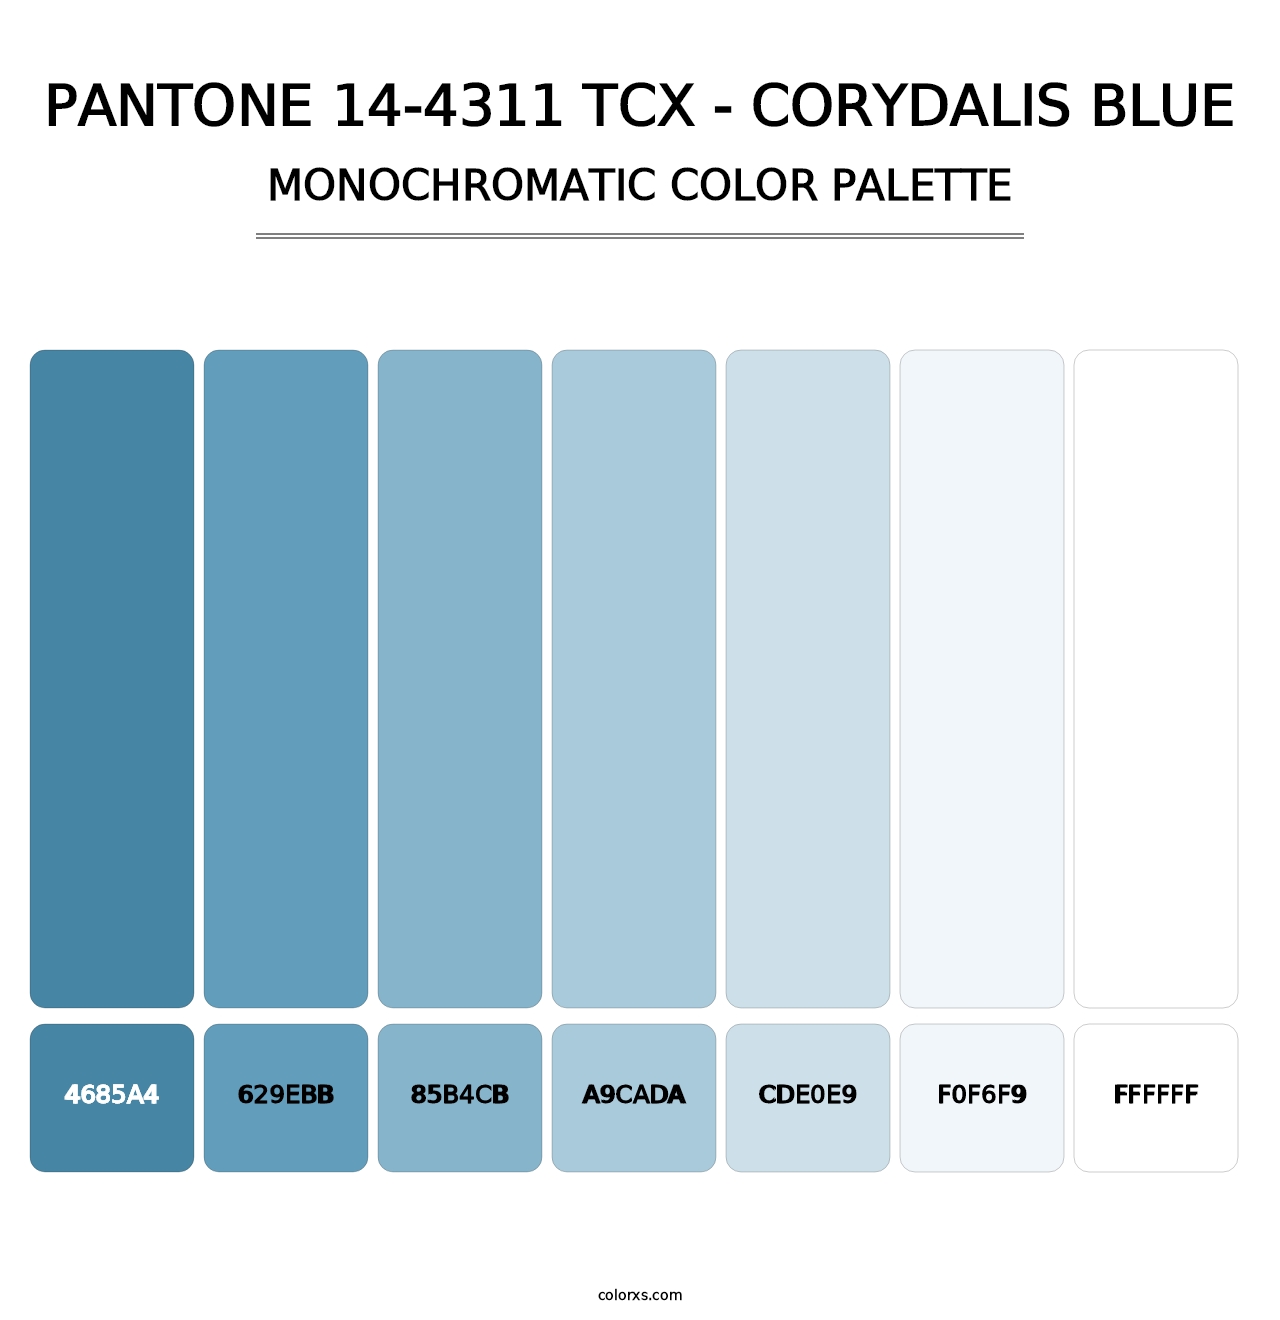 PANTONE 14-4311 TCX - Corydalis Blue - Monochromatic Color Palette